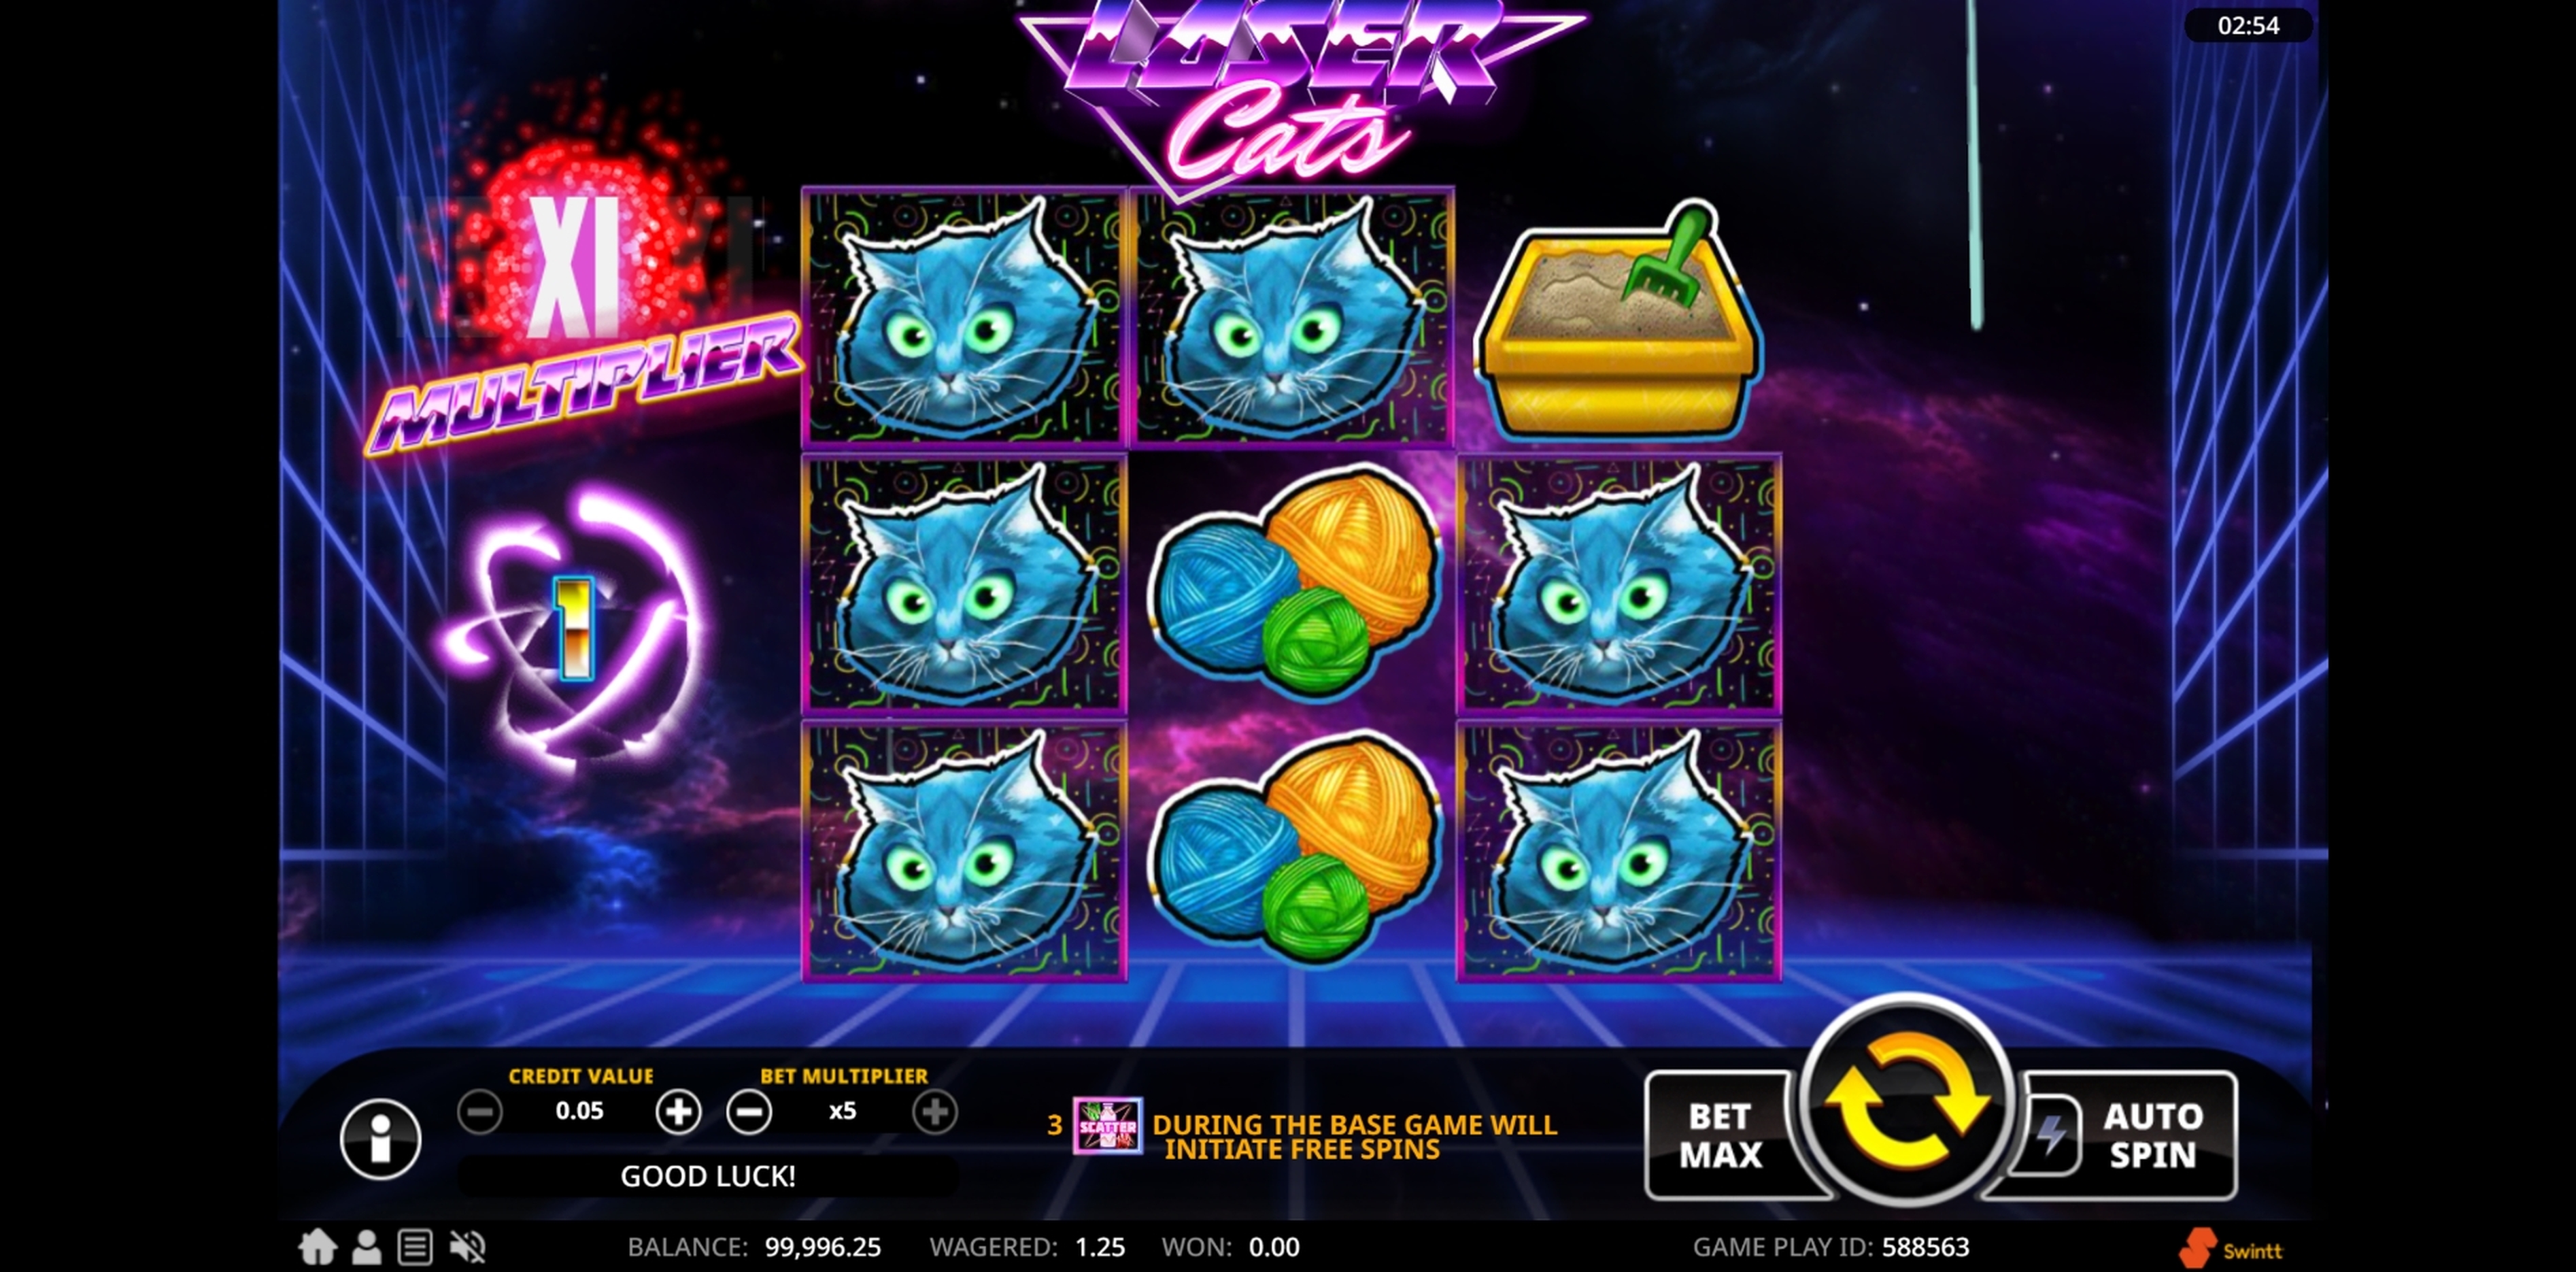 Win Money in Laser Cats Free Slot Game by Swintt